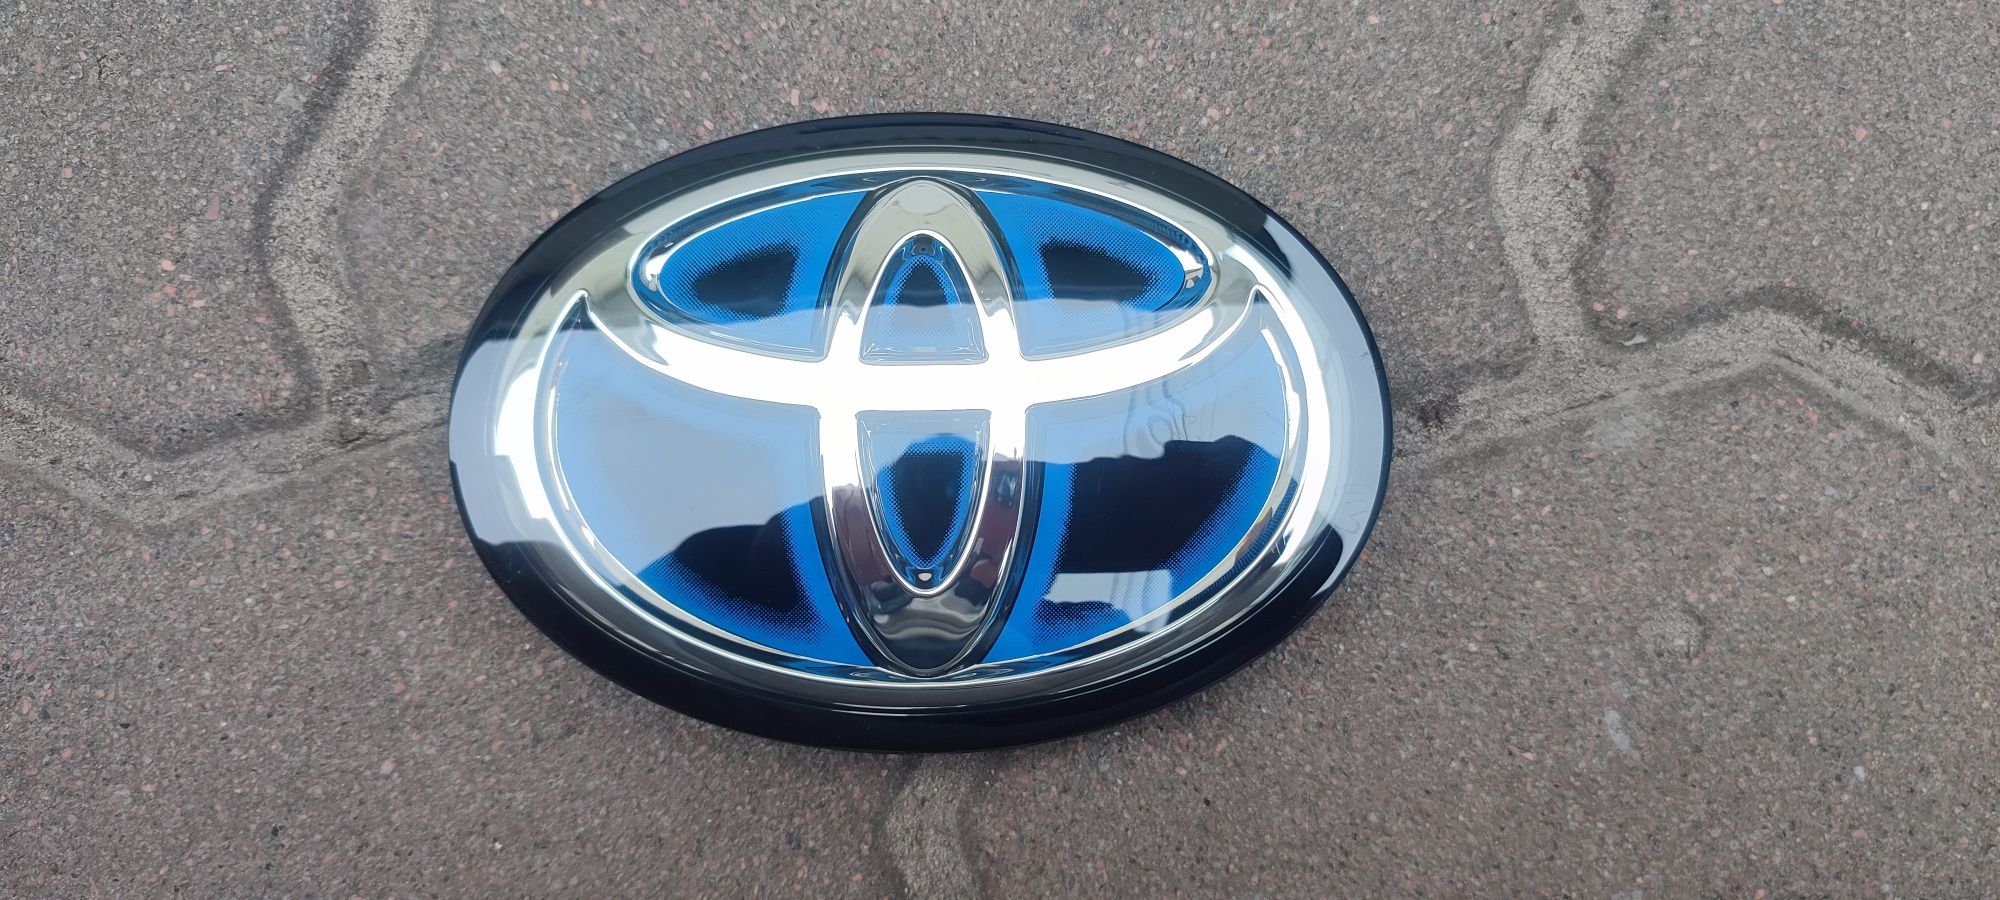 Значок Toyota prius під радар